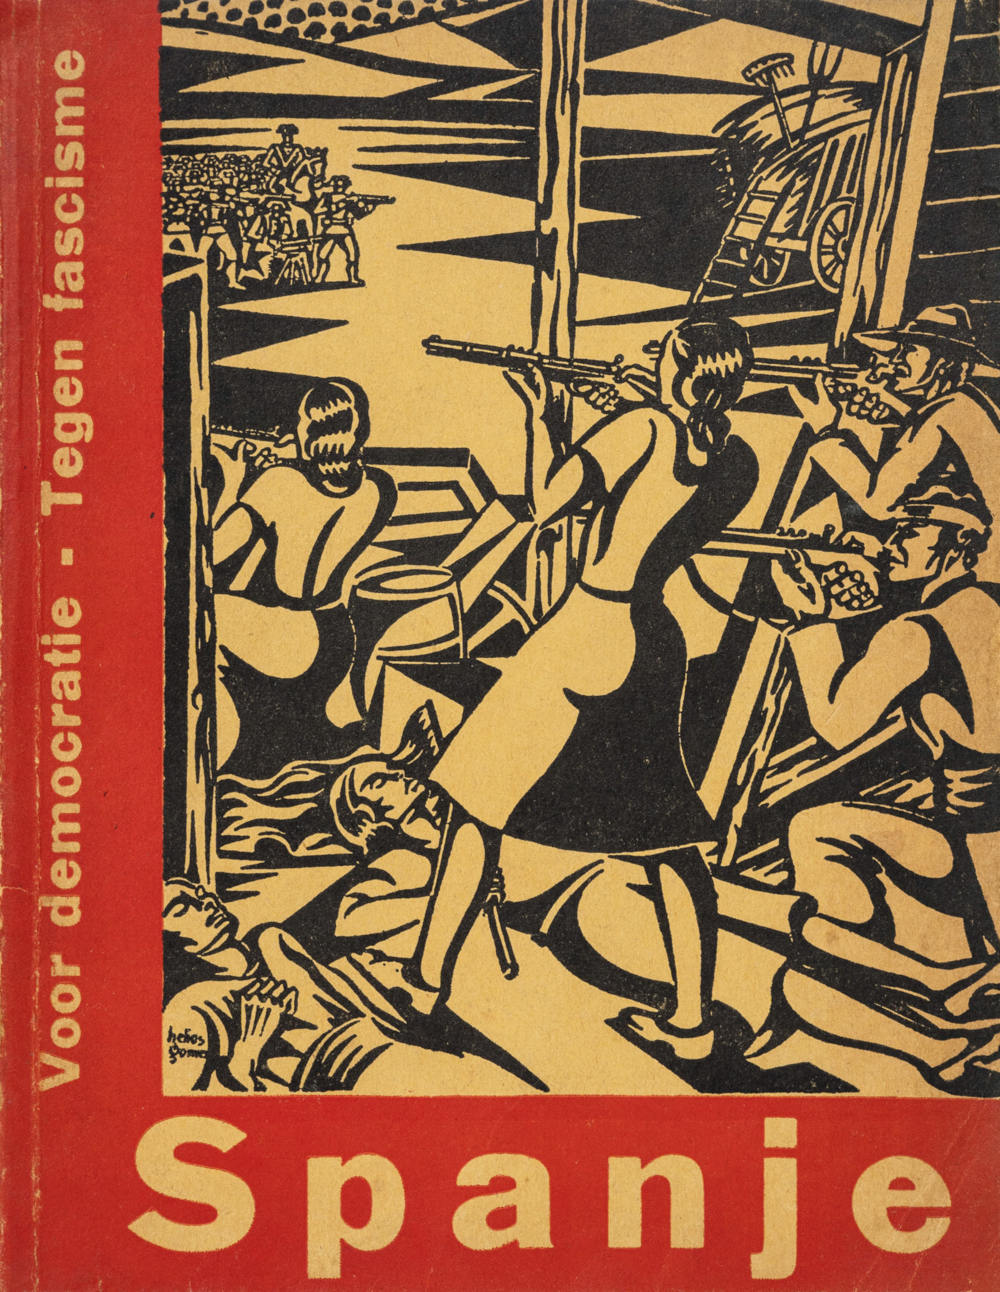 J. Bladergroen, “Spanje. Een volk vecht voor zijn vrijheid”, Fundament, no. 8 (Amsterdam, 1937)